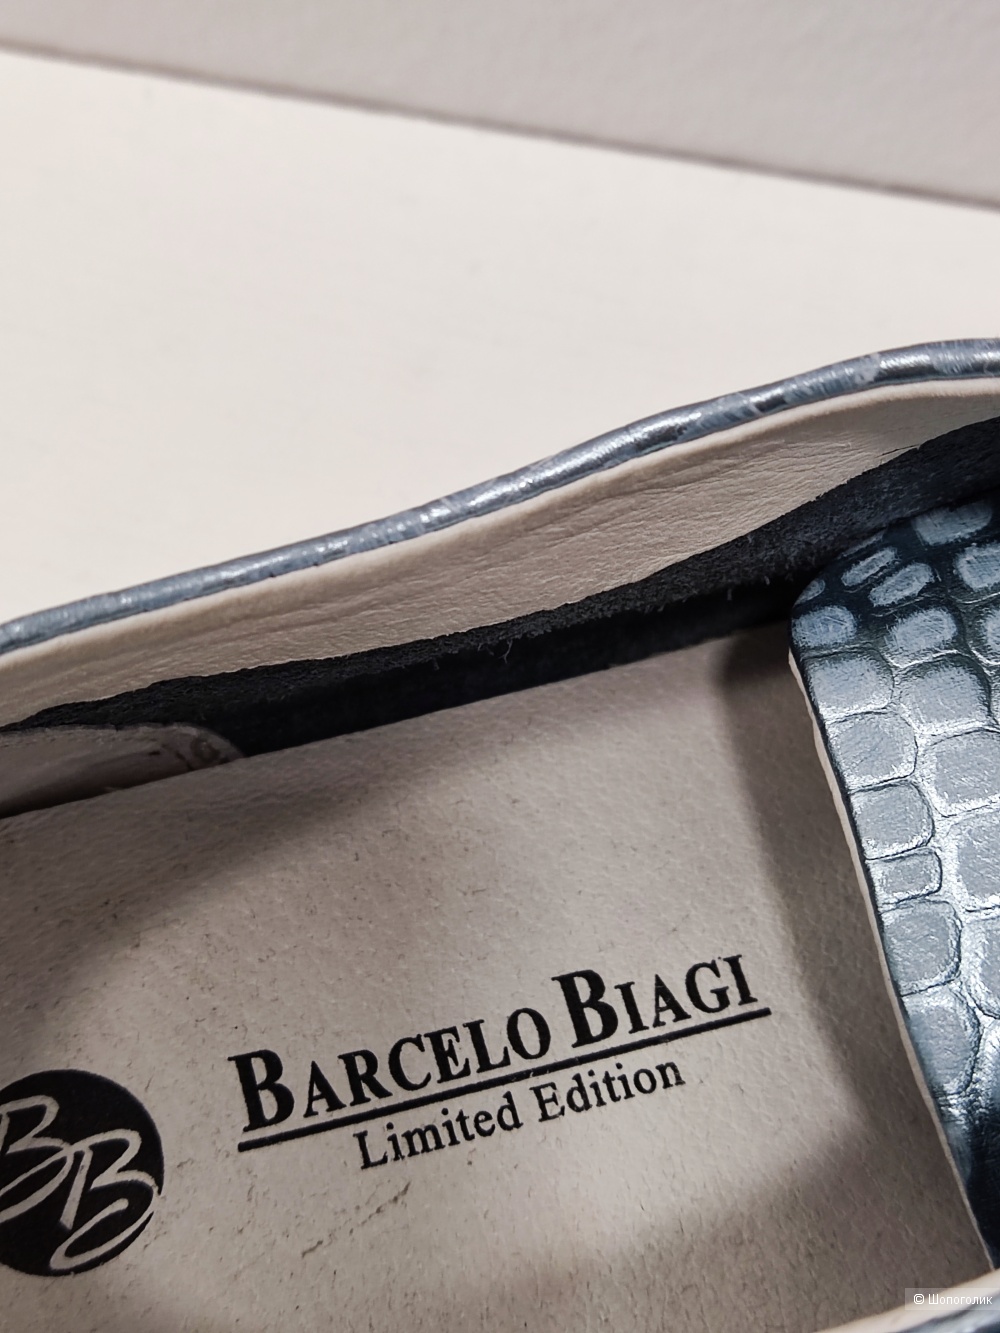 Ботинки Barcelo Biagi, 38